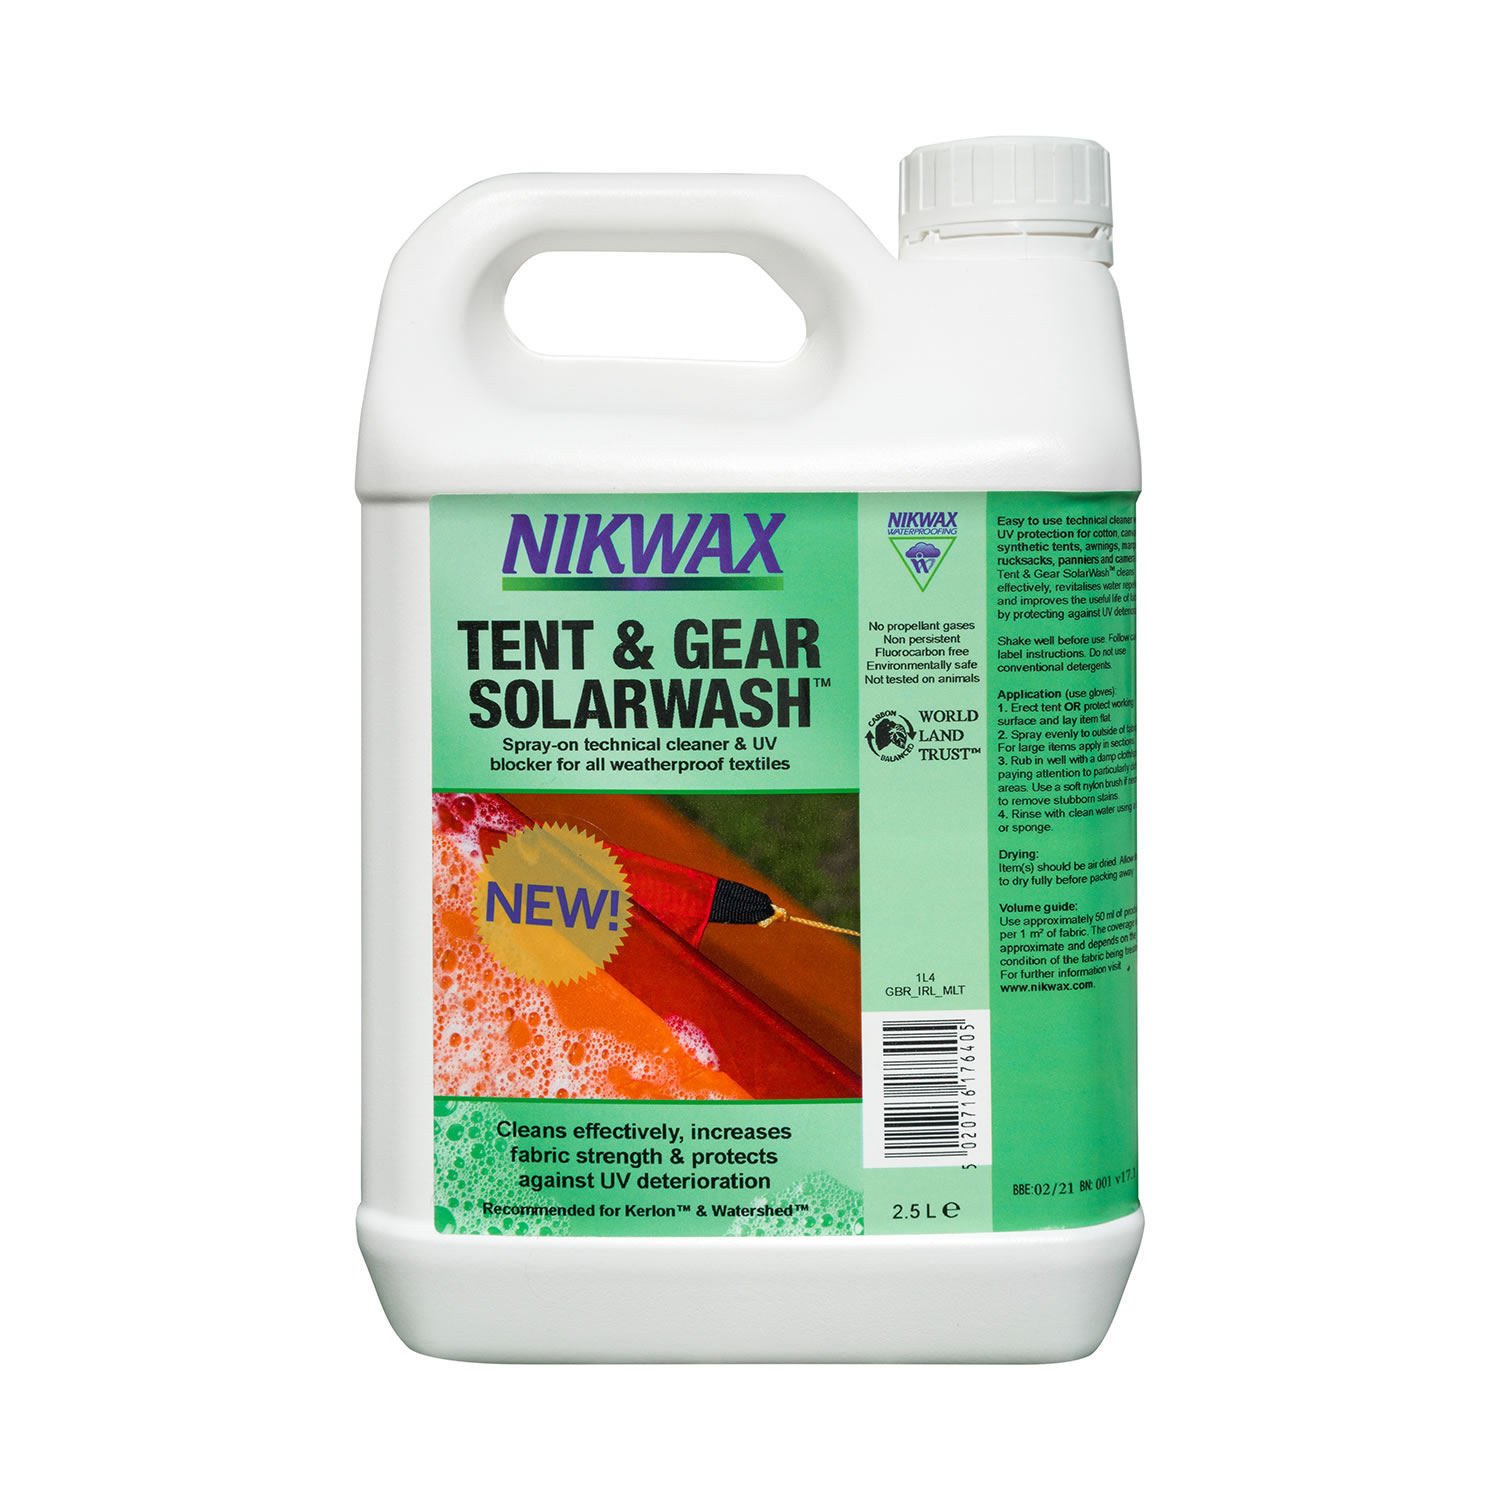 NIKWAX TENT & GEAR SOLARWASH 2.5 LT 2.5 LT